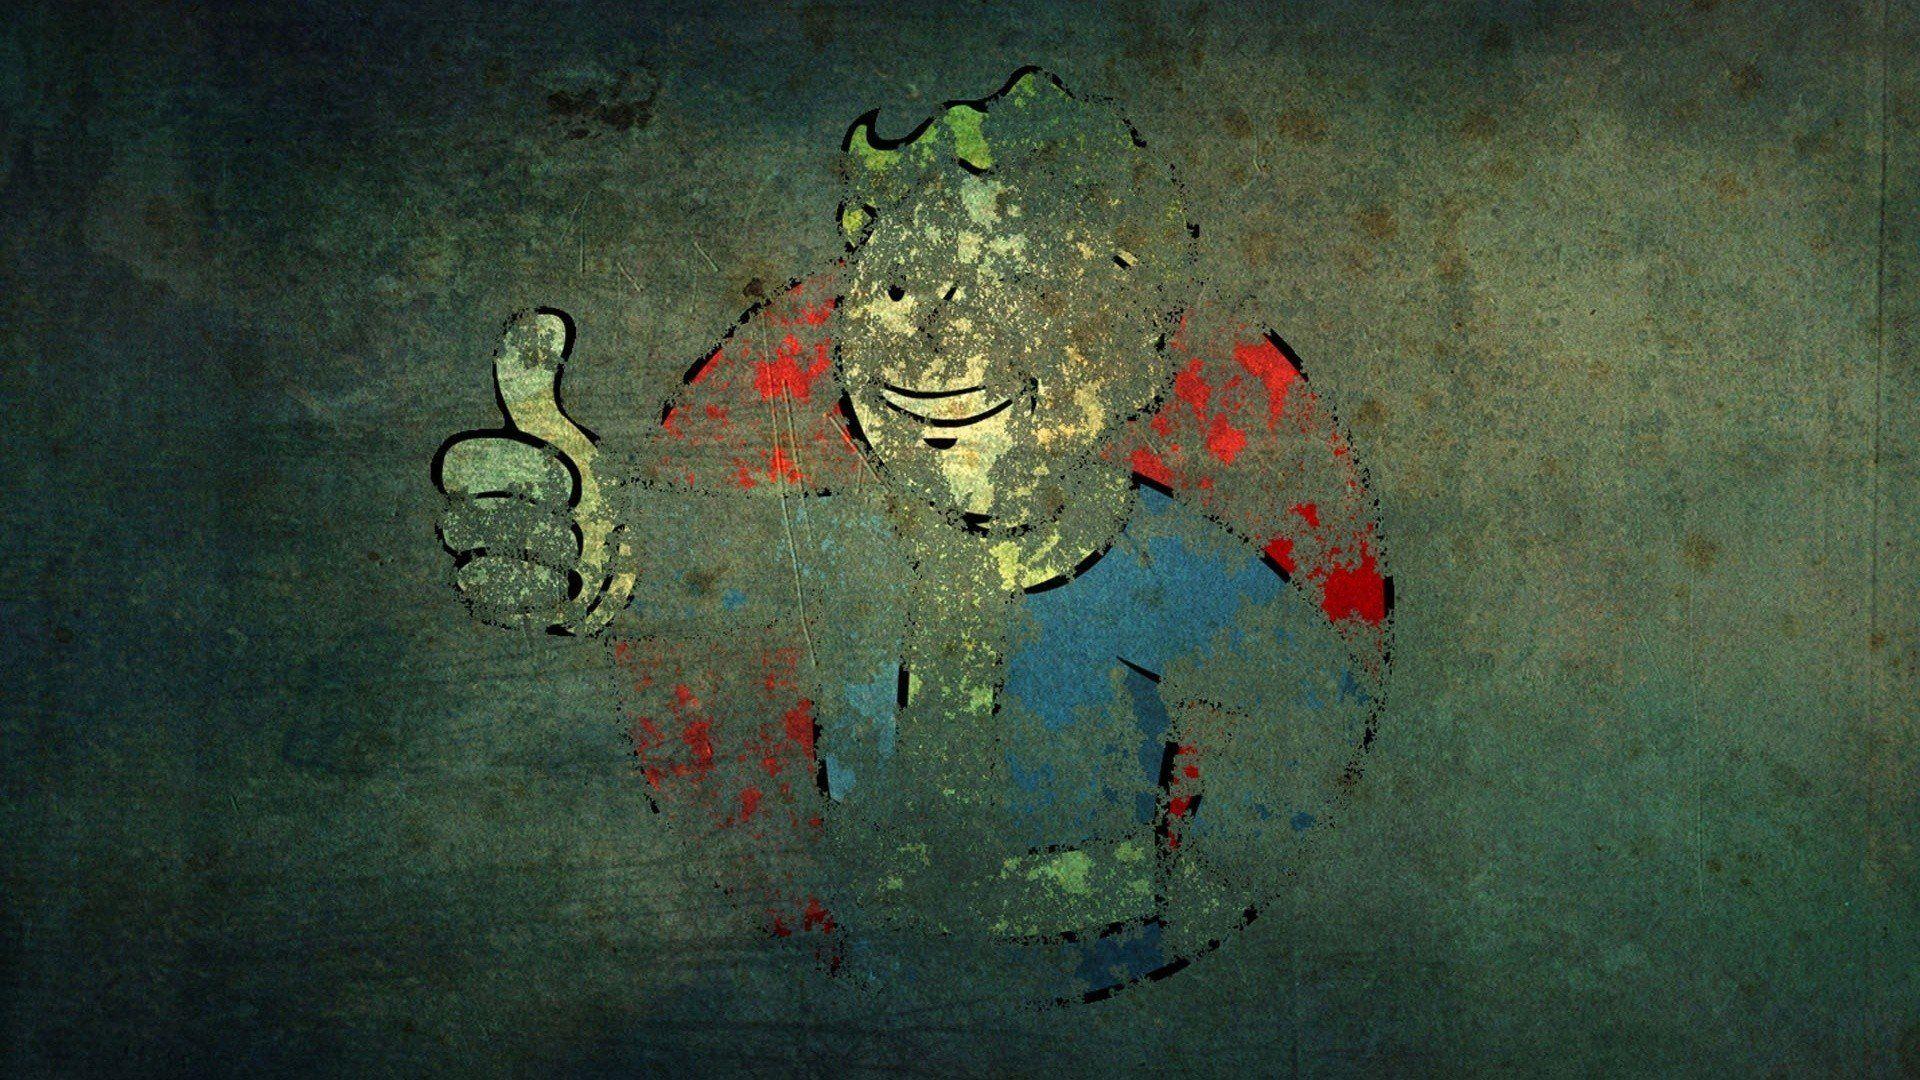 Wallpaper.wiki Video Game Fallout Pip Boy 1920x1080 PIC WPB005677